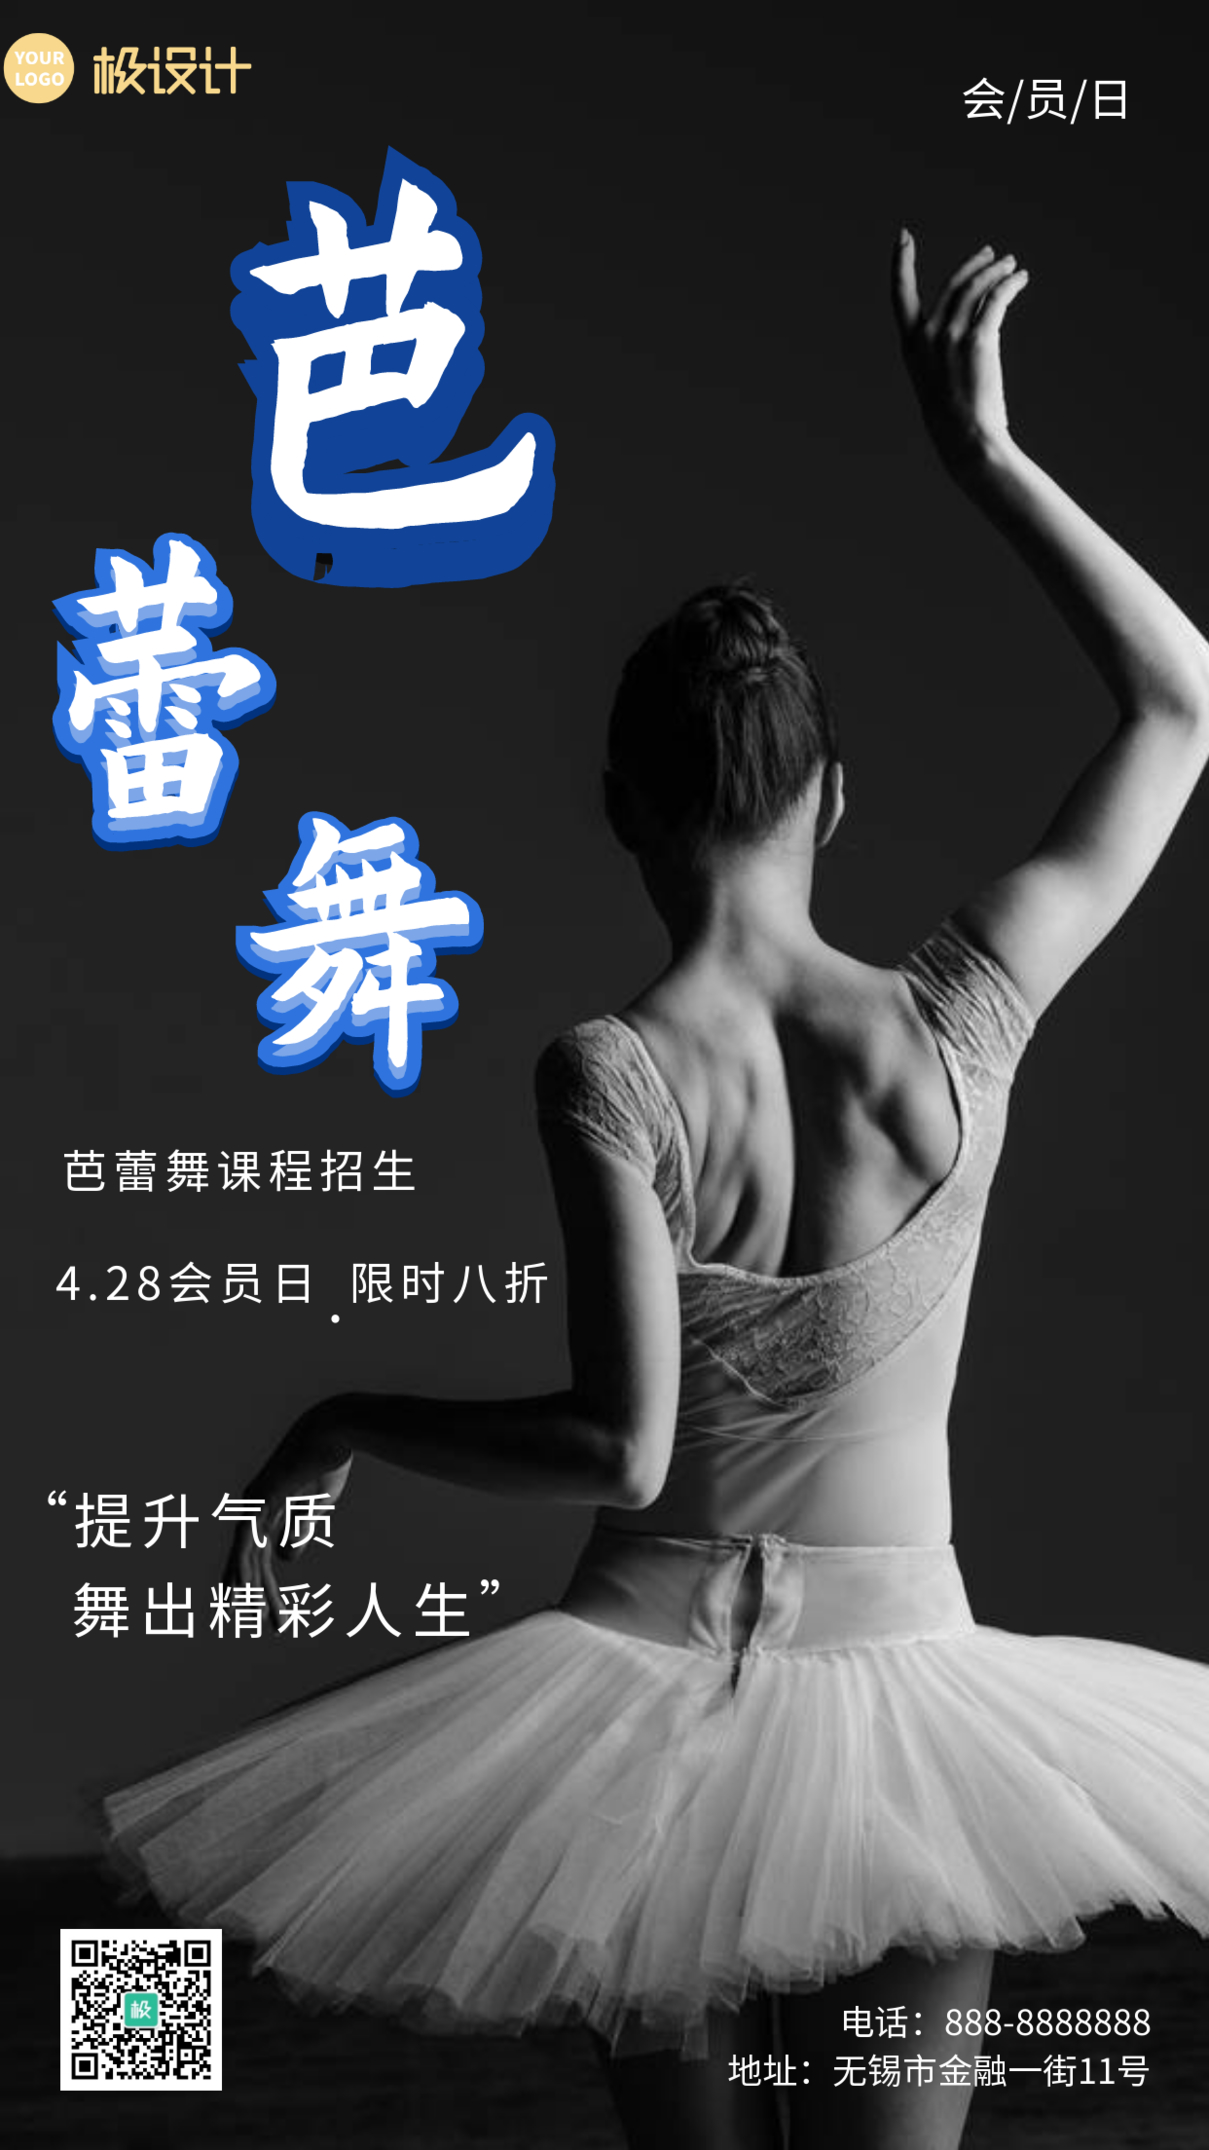 教育机构芭蕾舞会员特惠日活动促销宣传手机海报